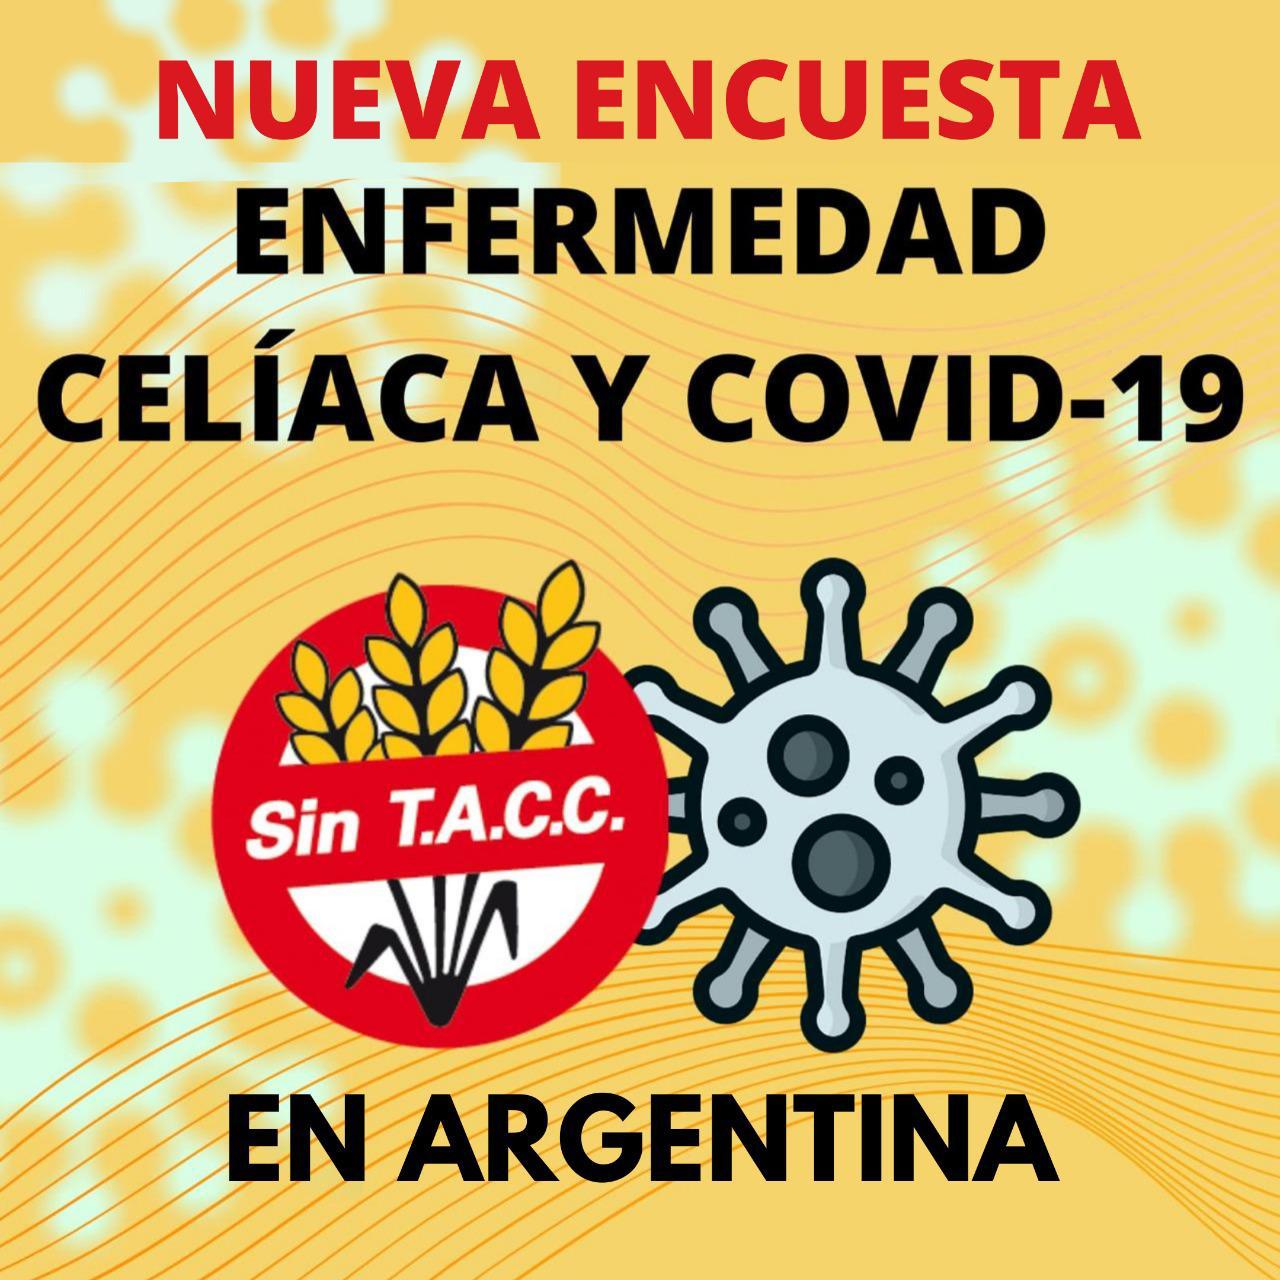 Nueva Encuesta  Enfermedad Celíaca y COVID-19 en Argentina 
Para celíacos y NO celíacos